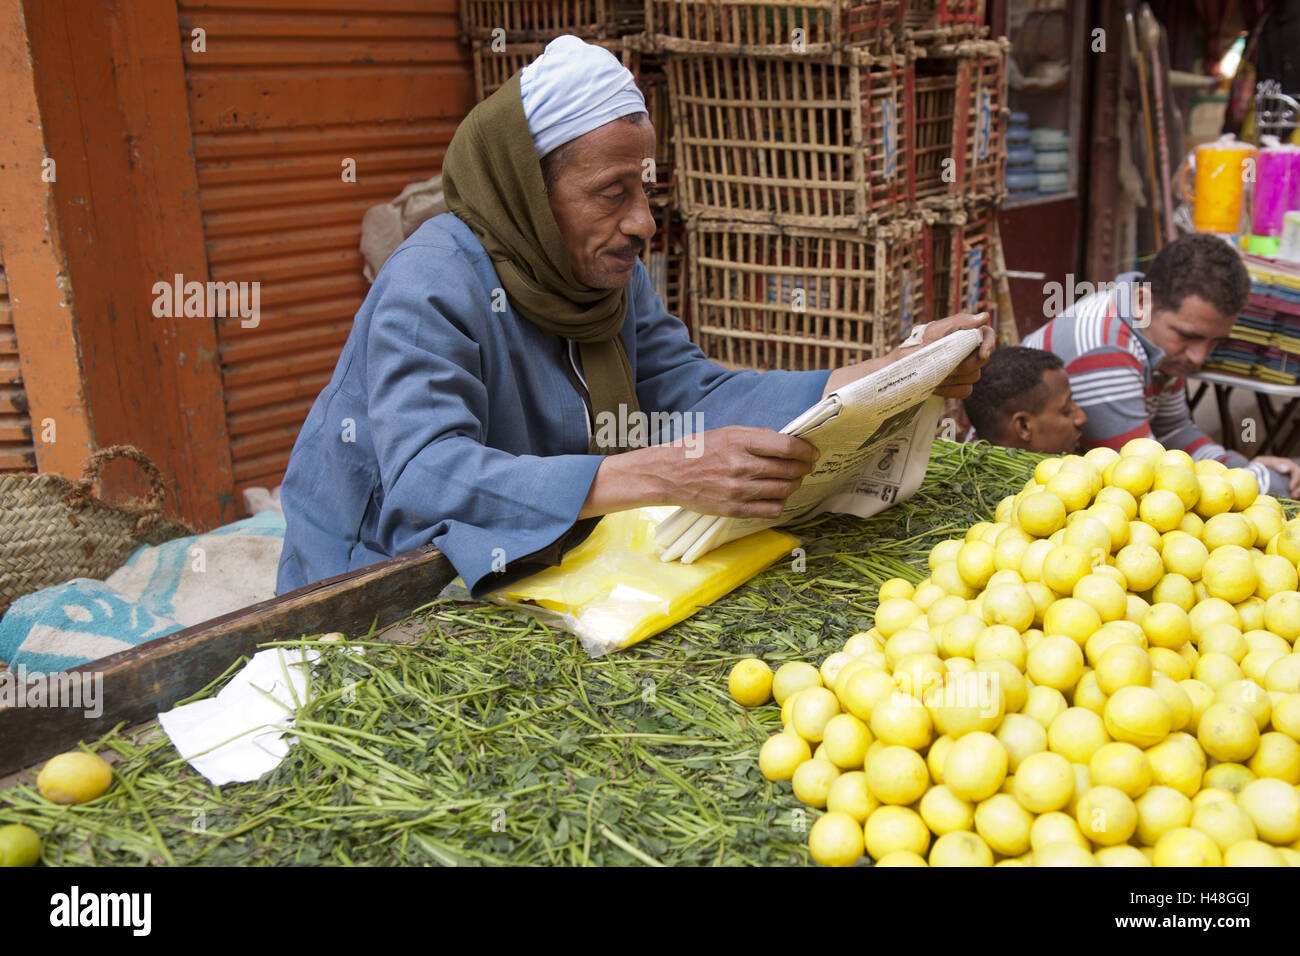 Egypt, Luxor, fruiterer in the Souk, Stock Photo